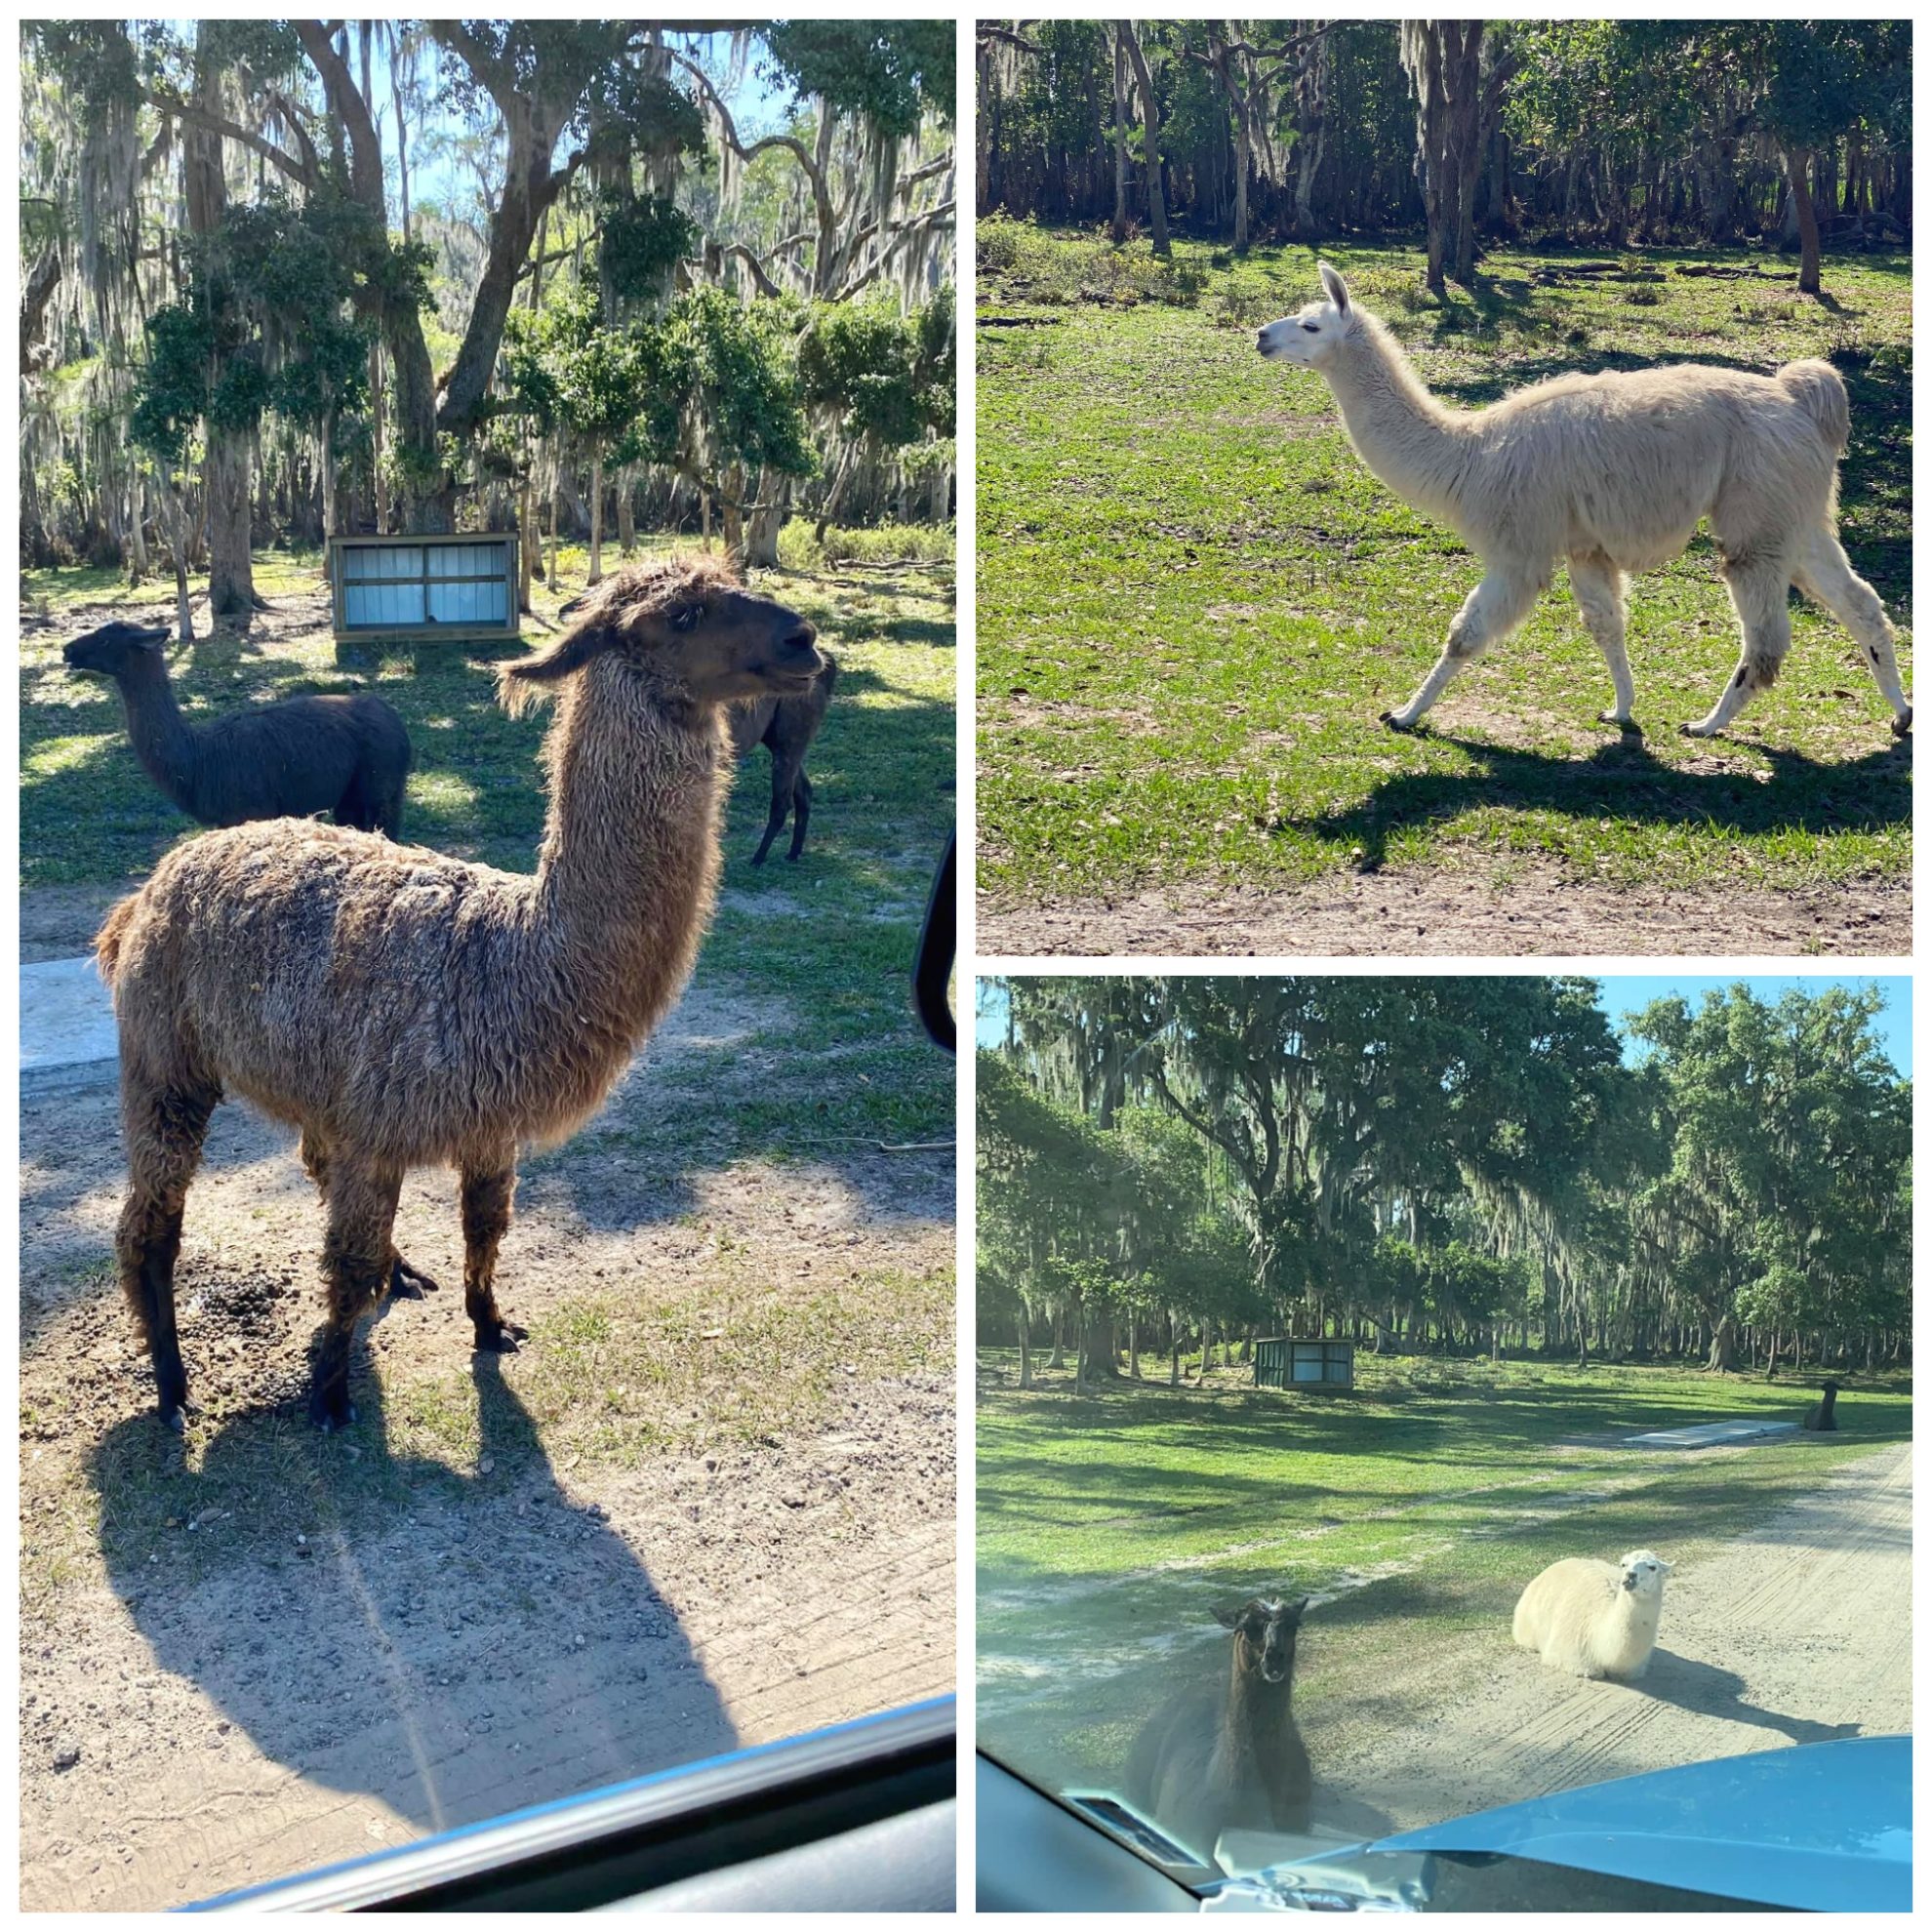 llamas roam free at Wild Florida Drive-Thru Safari Park